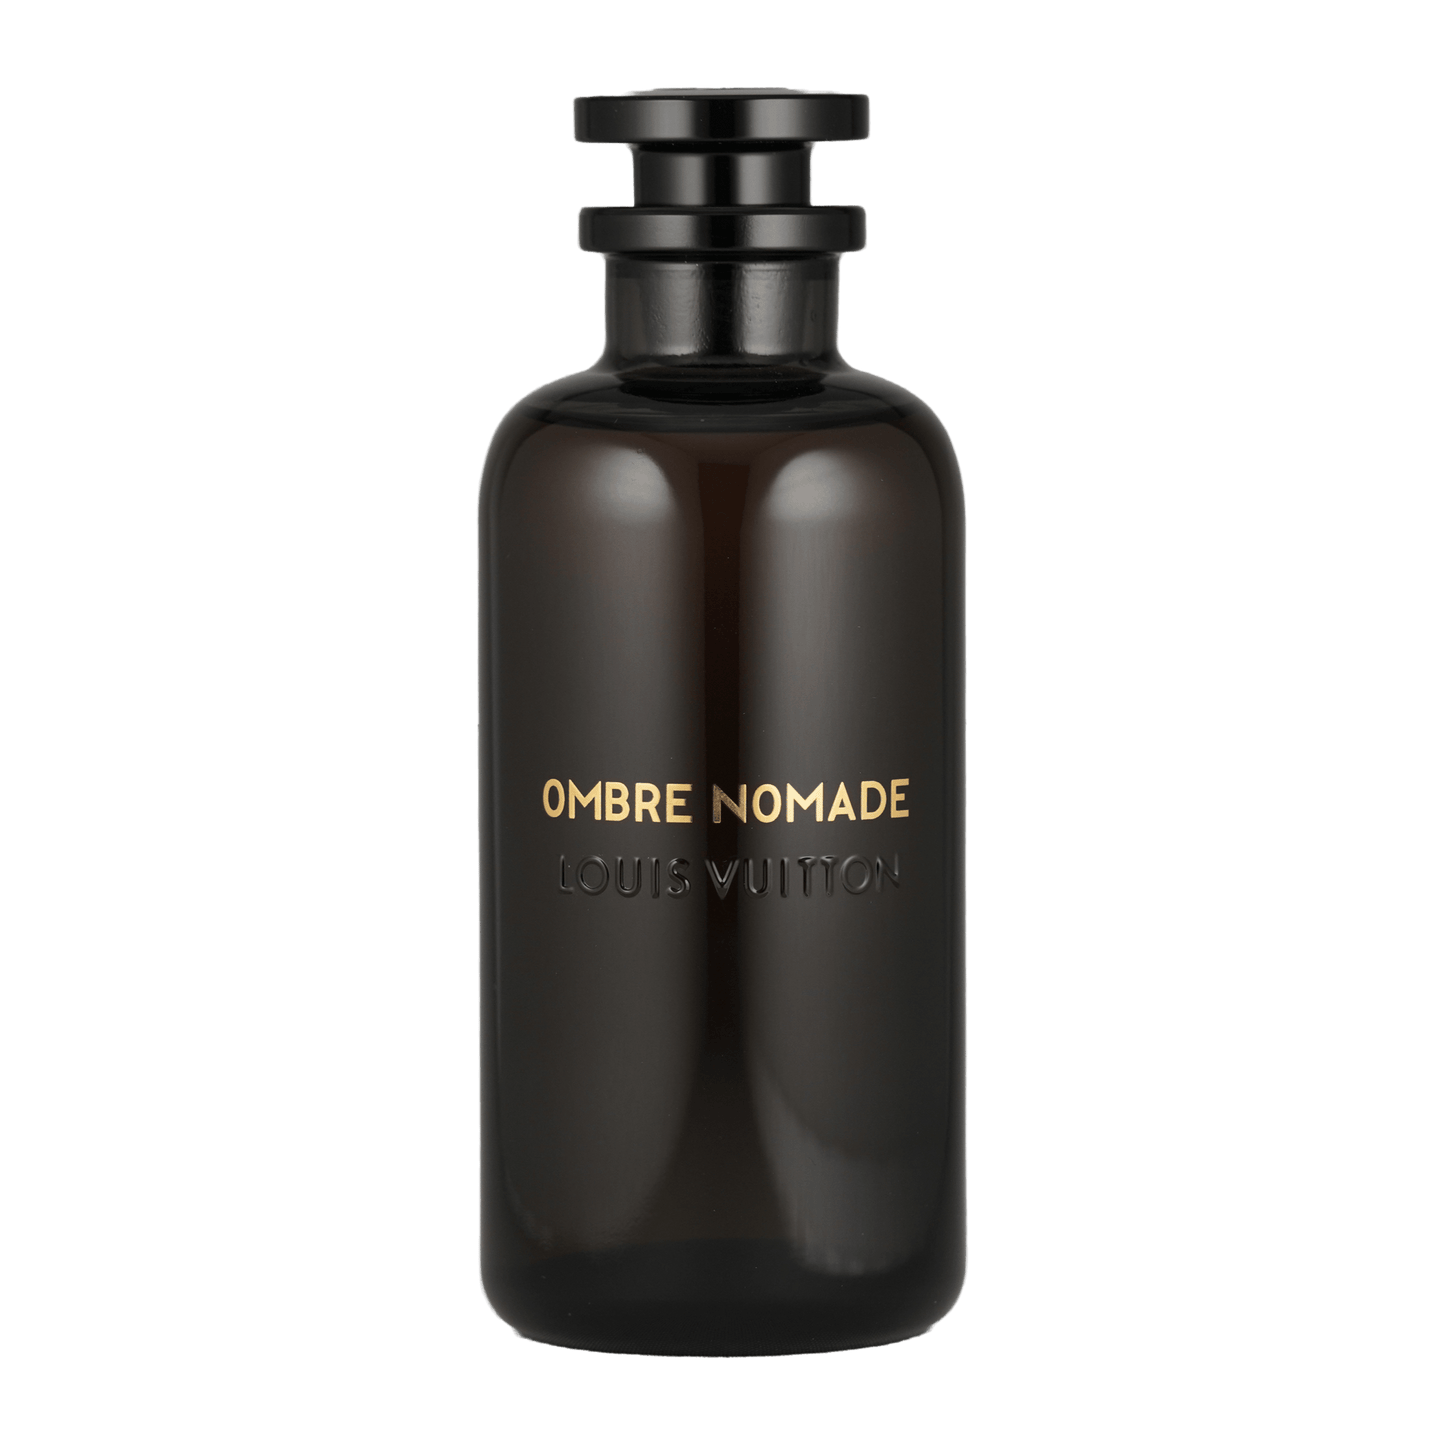 Ein Bild von dem Duft Ombre Nomade von Louis Vuitton angeboten als Parfümprobe.